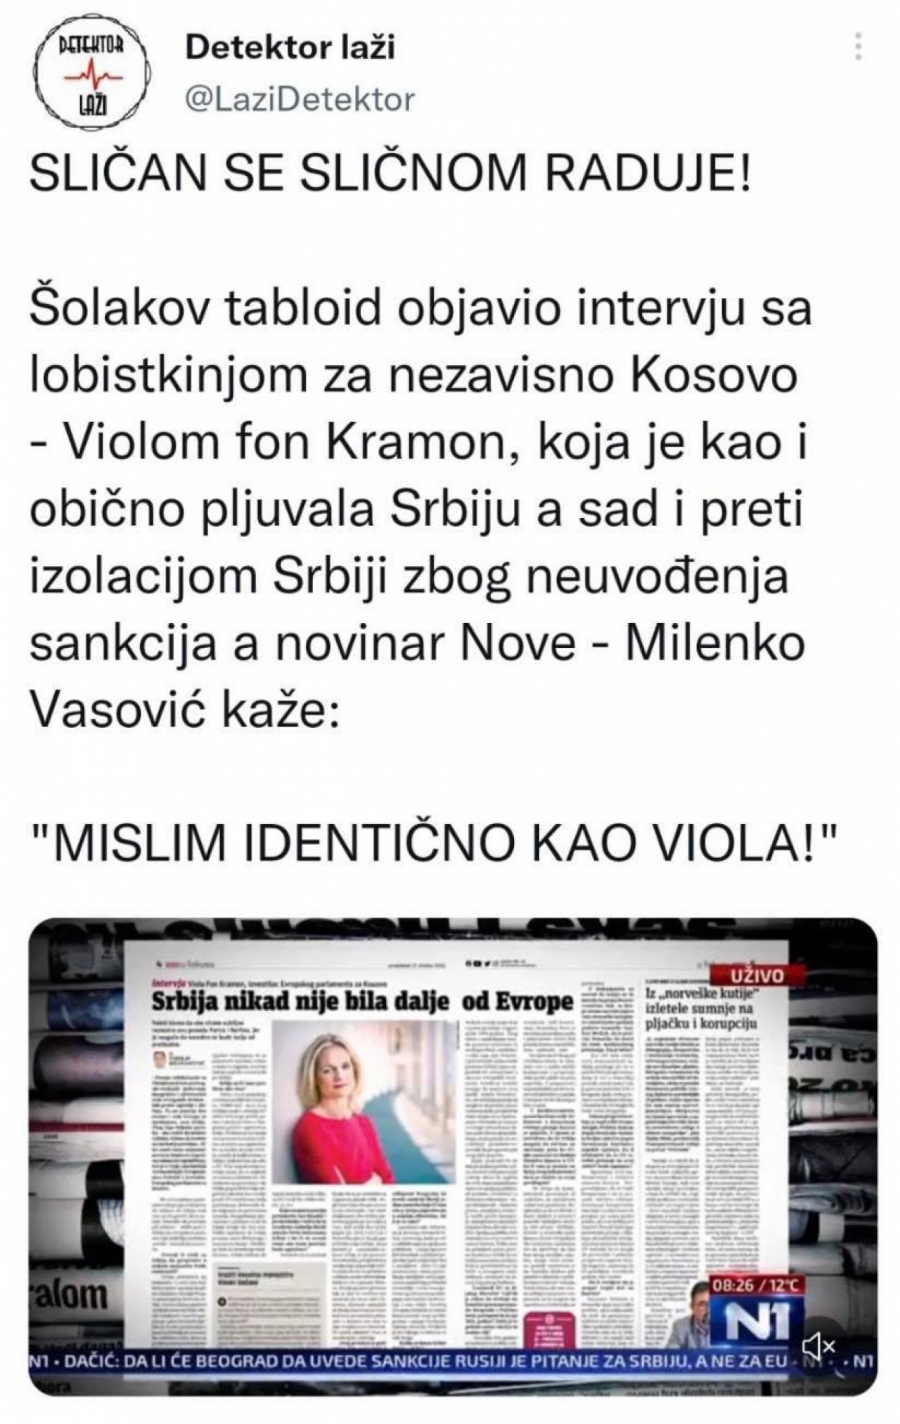 SLIČAN SE SLIČNOM RADUJE Viola fon Kramon pljuvala Srbiju, Vasović odmah potrčao da je podrži!